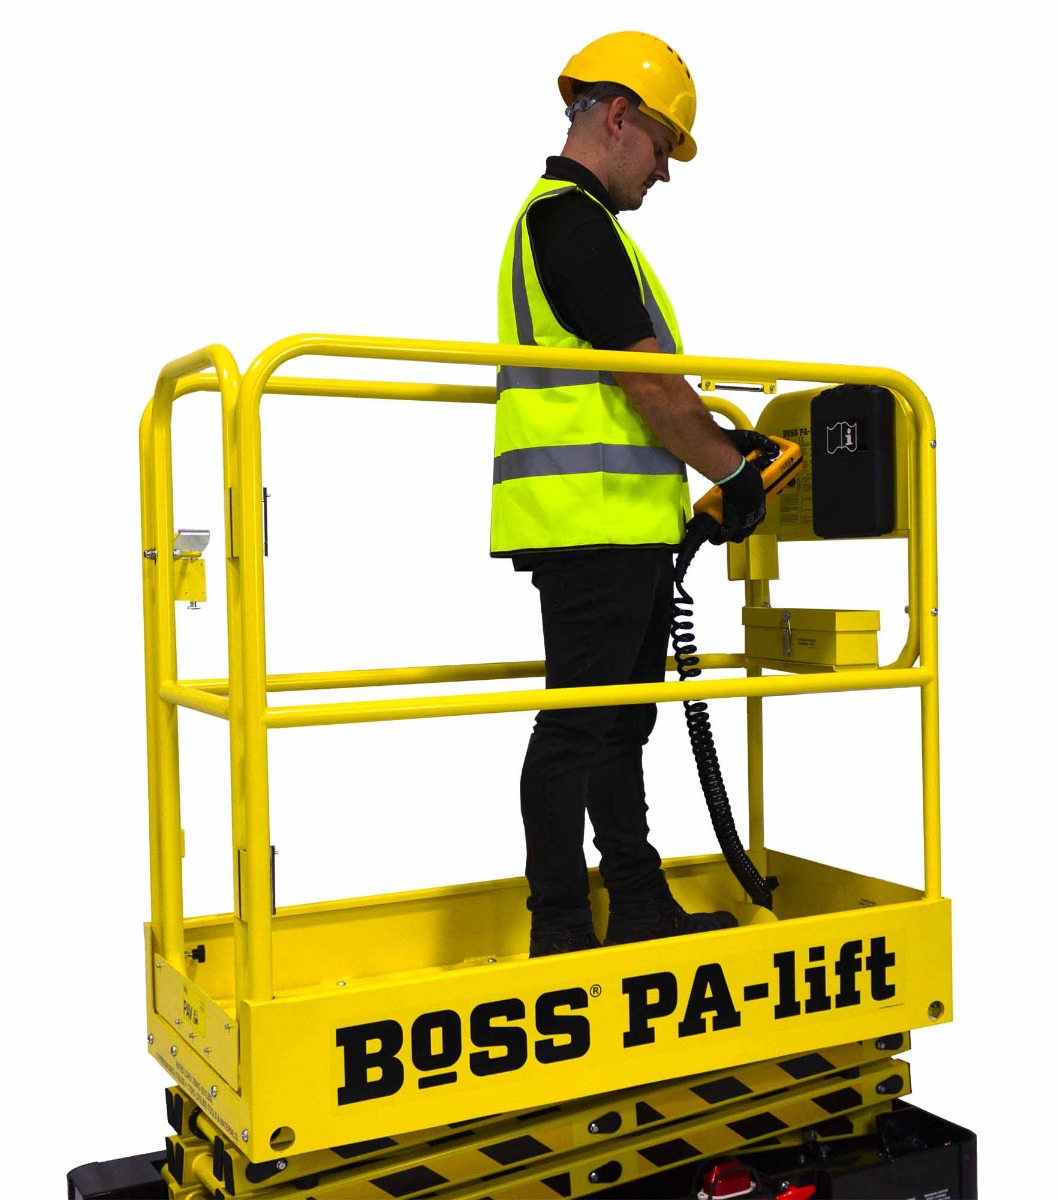 BoSS PA Lift with operator